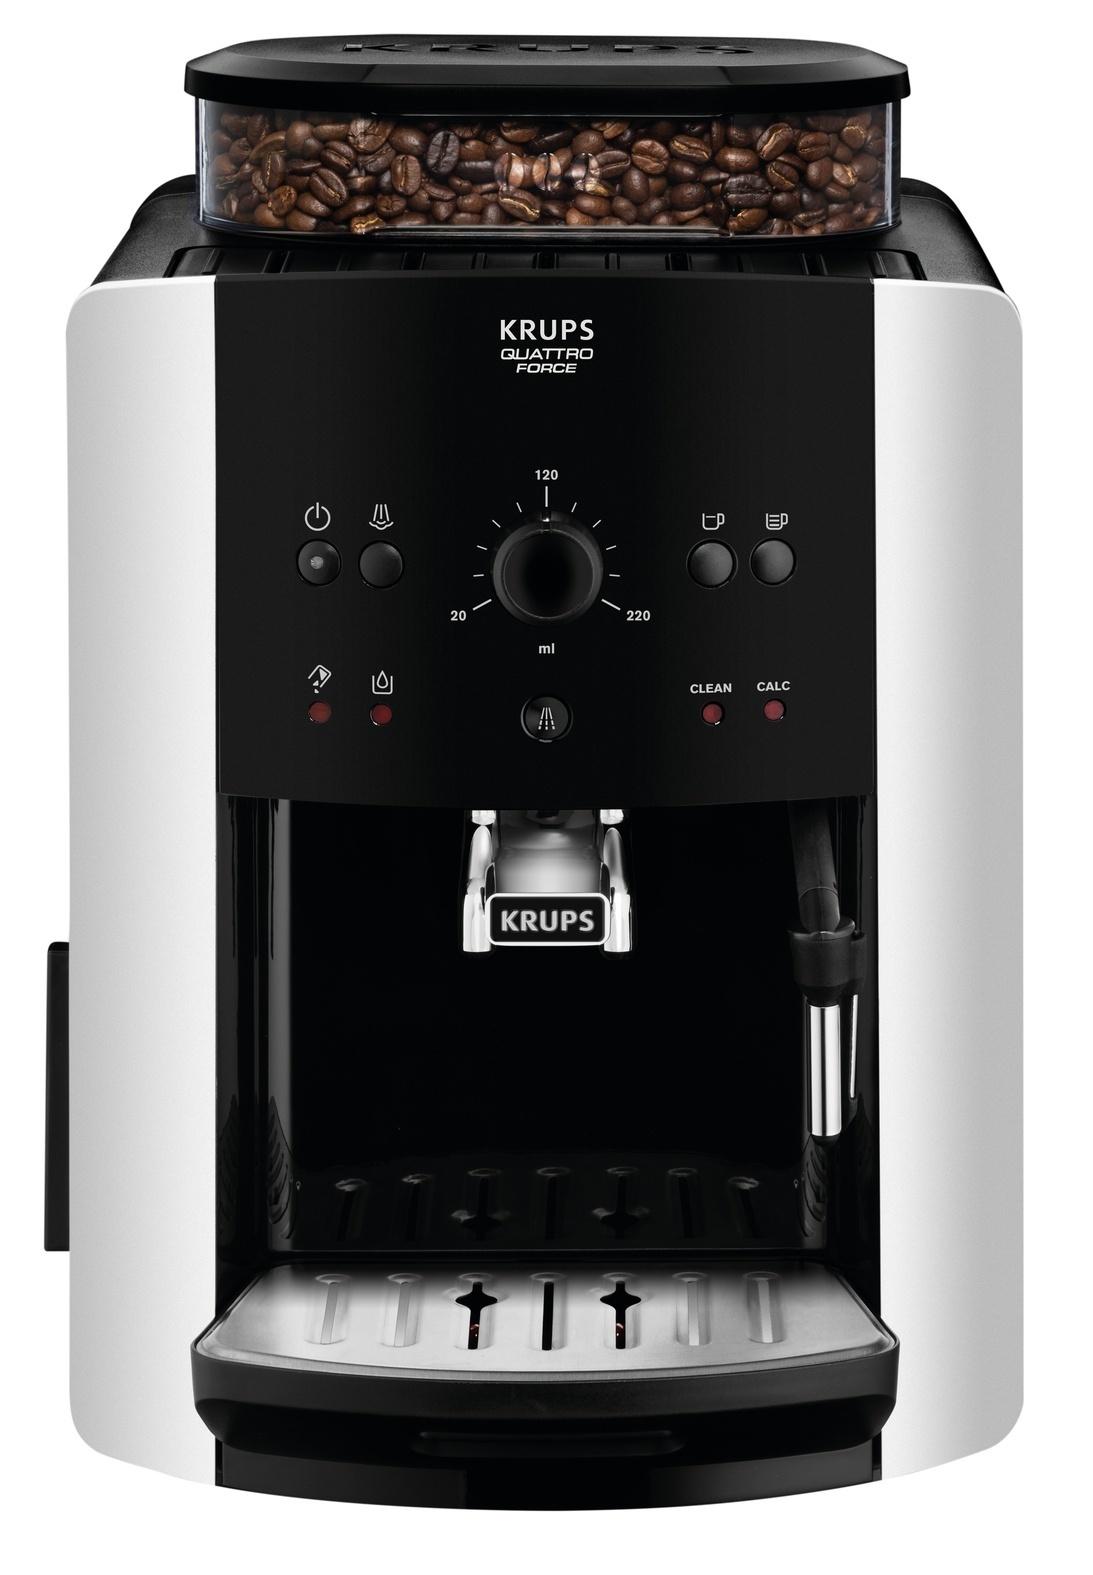 Krups Kaffeevollautomat Krups Schwarz/Silberfarben - Schwarz/Silbereichenfarben, MODERN, Kunststoff/Metall (29/49/39cm) - Krups